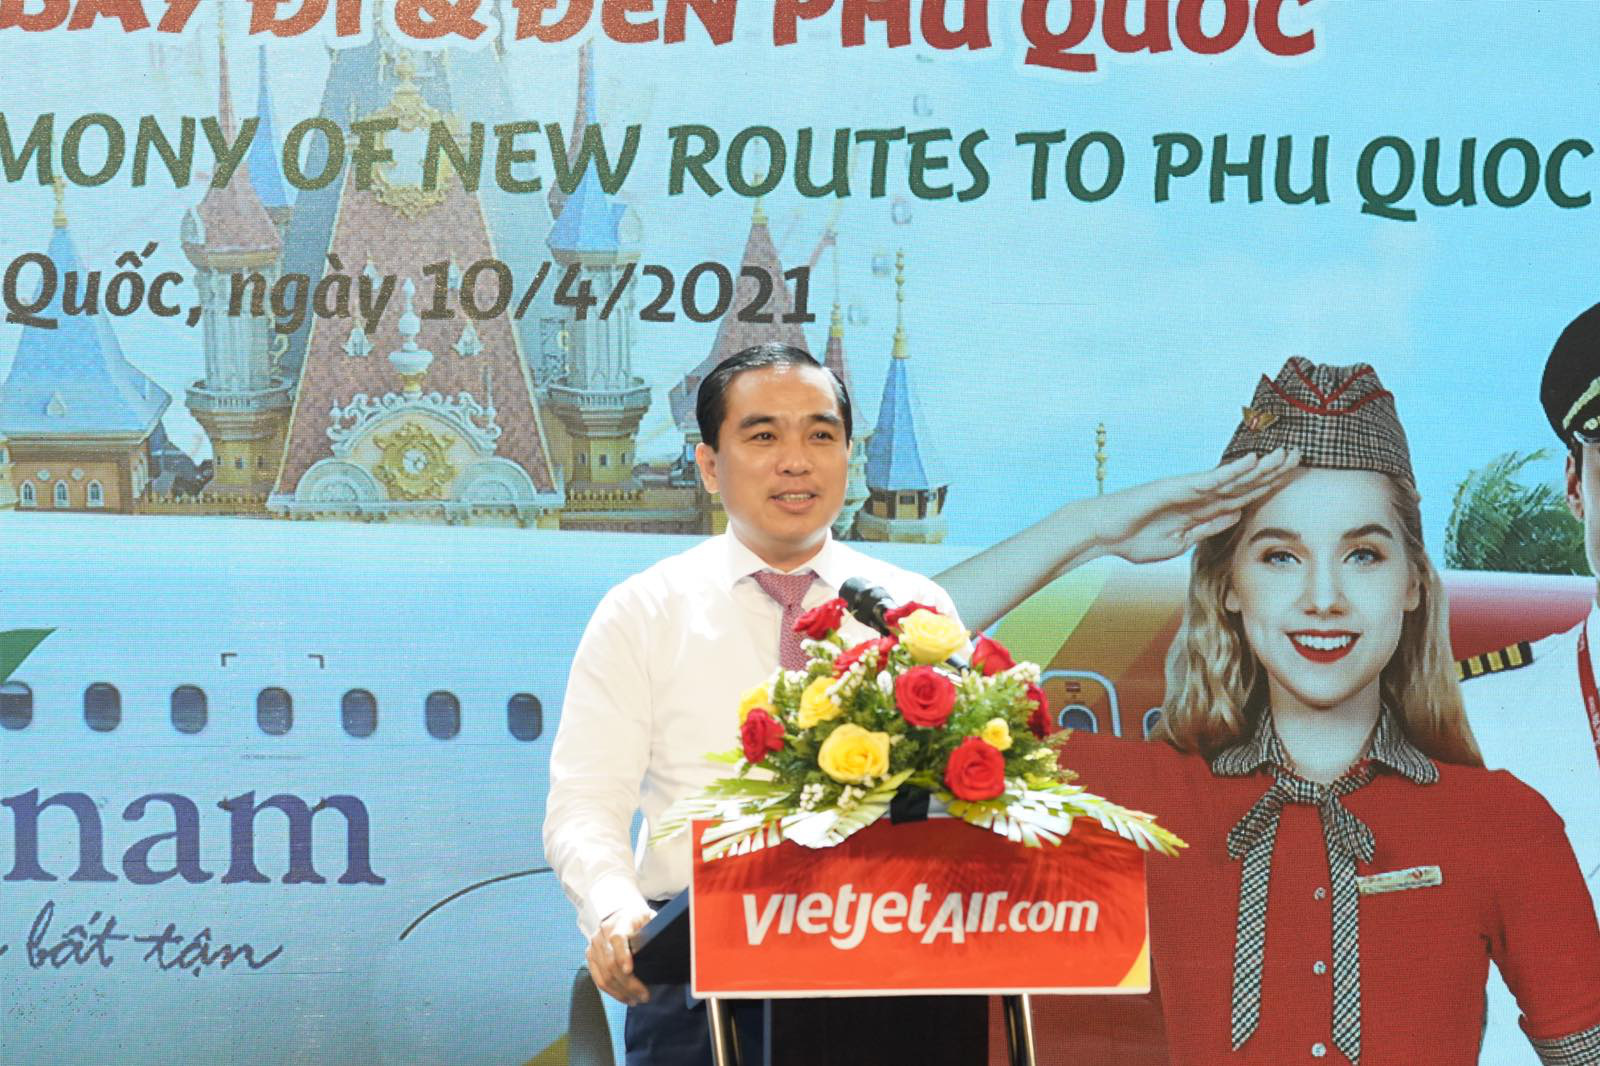 Siêu ưu đãi kỳ nghỉ trọn gói từ 10 đường bay Vietjet tới Phú Quốc - Ảnh 2.